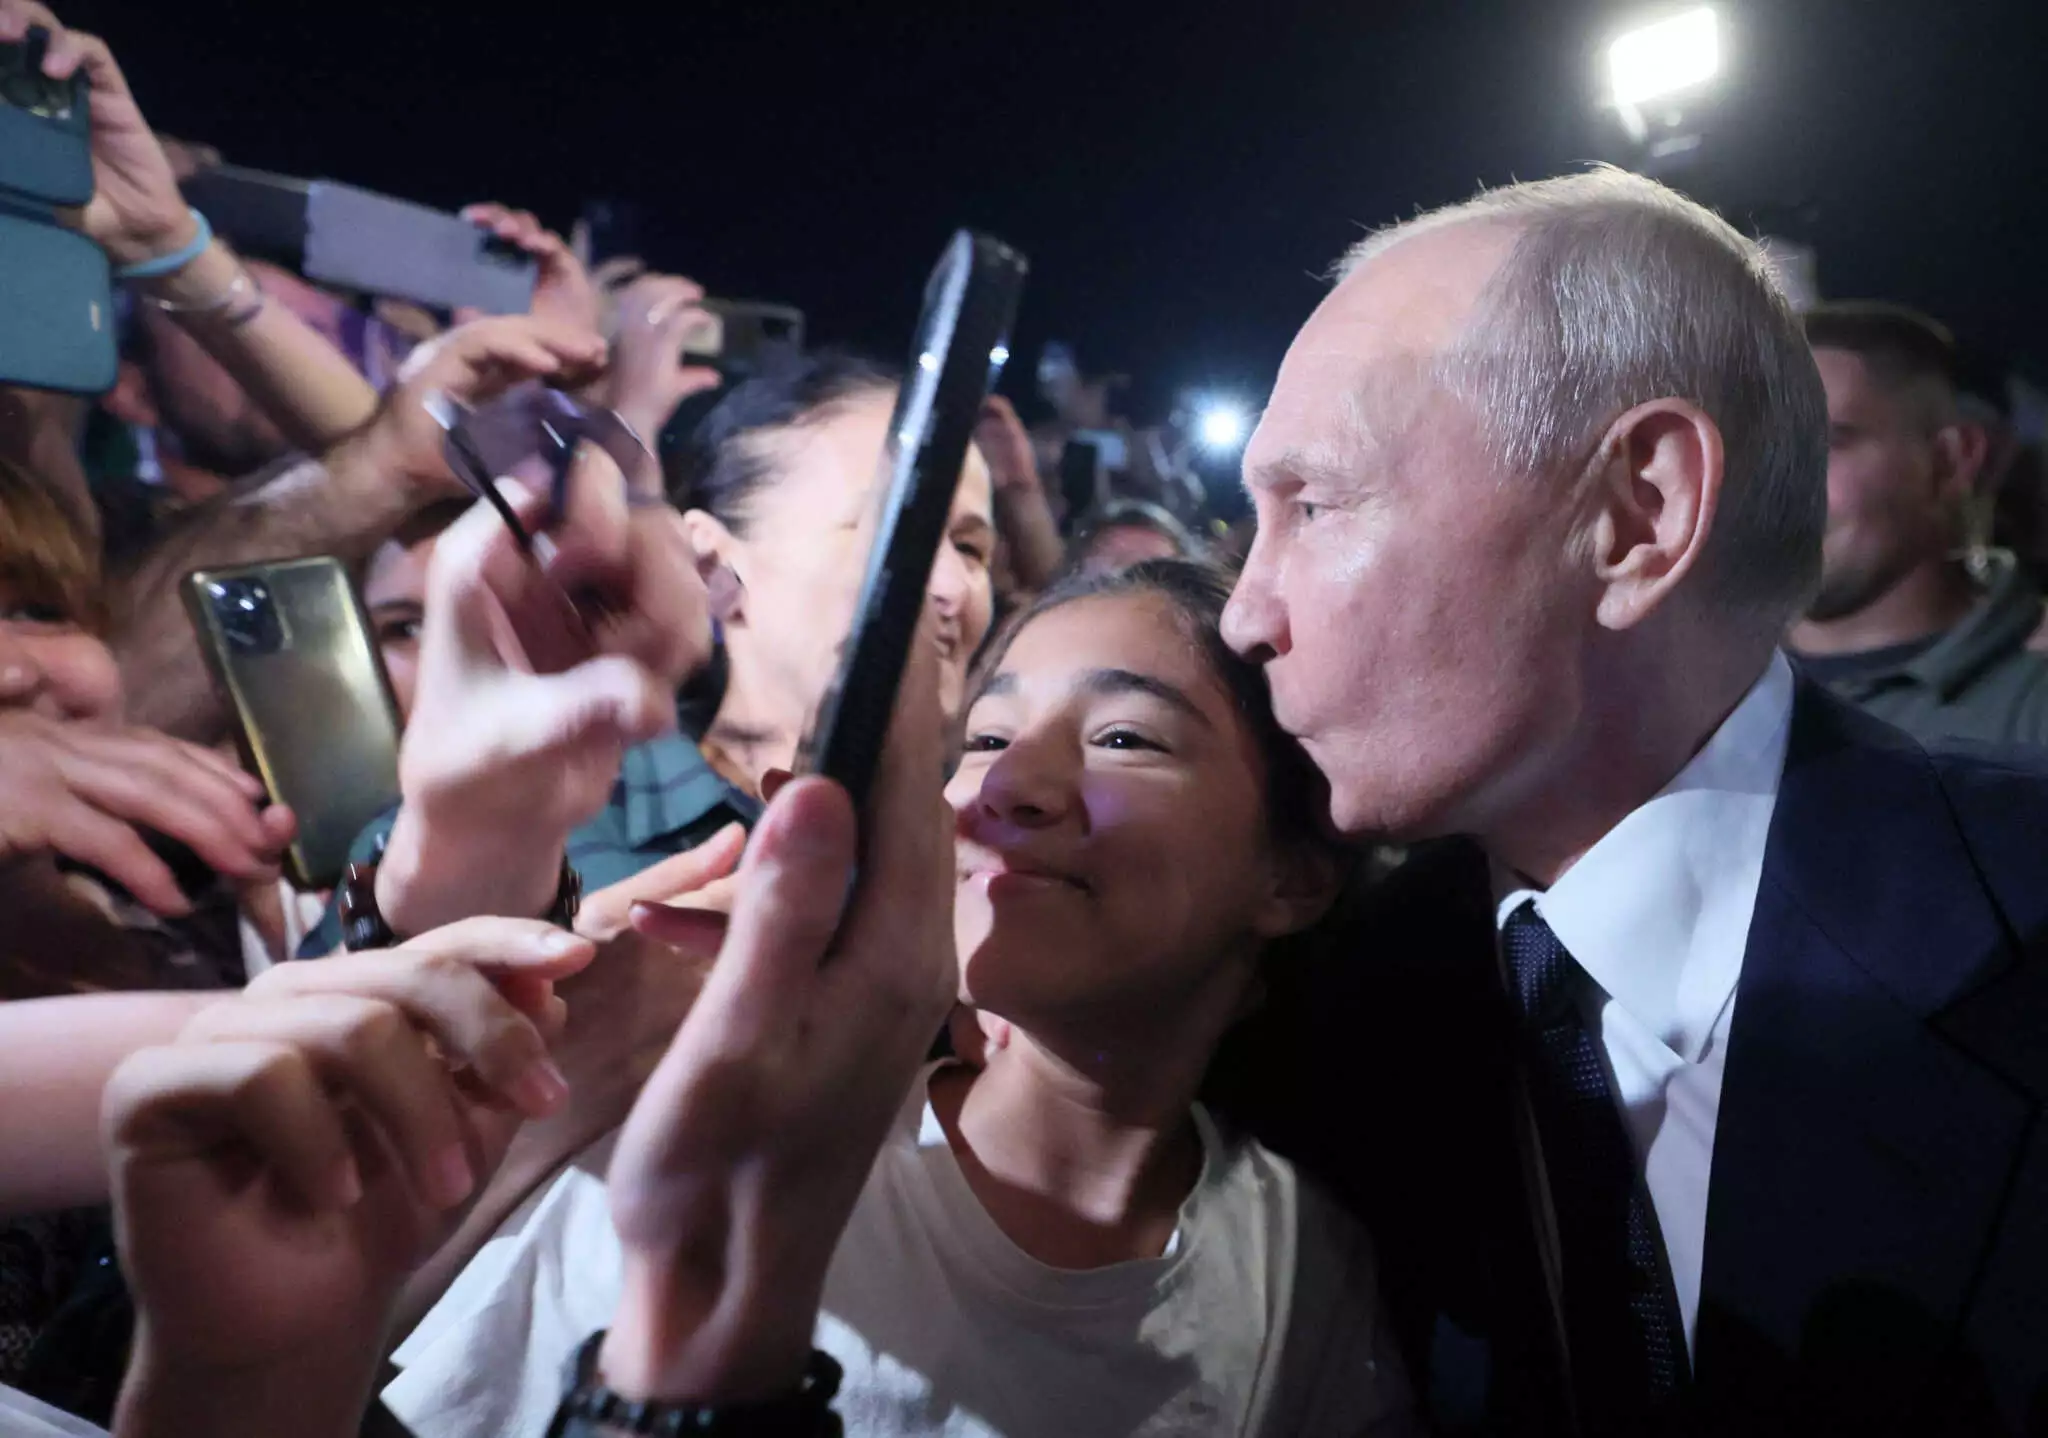 Πρόσχαρος ο Β.Πούτιν σε εμφάνισή του στο Νταγκεστάν: Έβγαλε φωτογραφίες με τον κόσμο και μοίρασε φιλιά (φώτο)